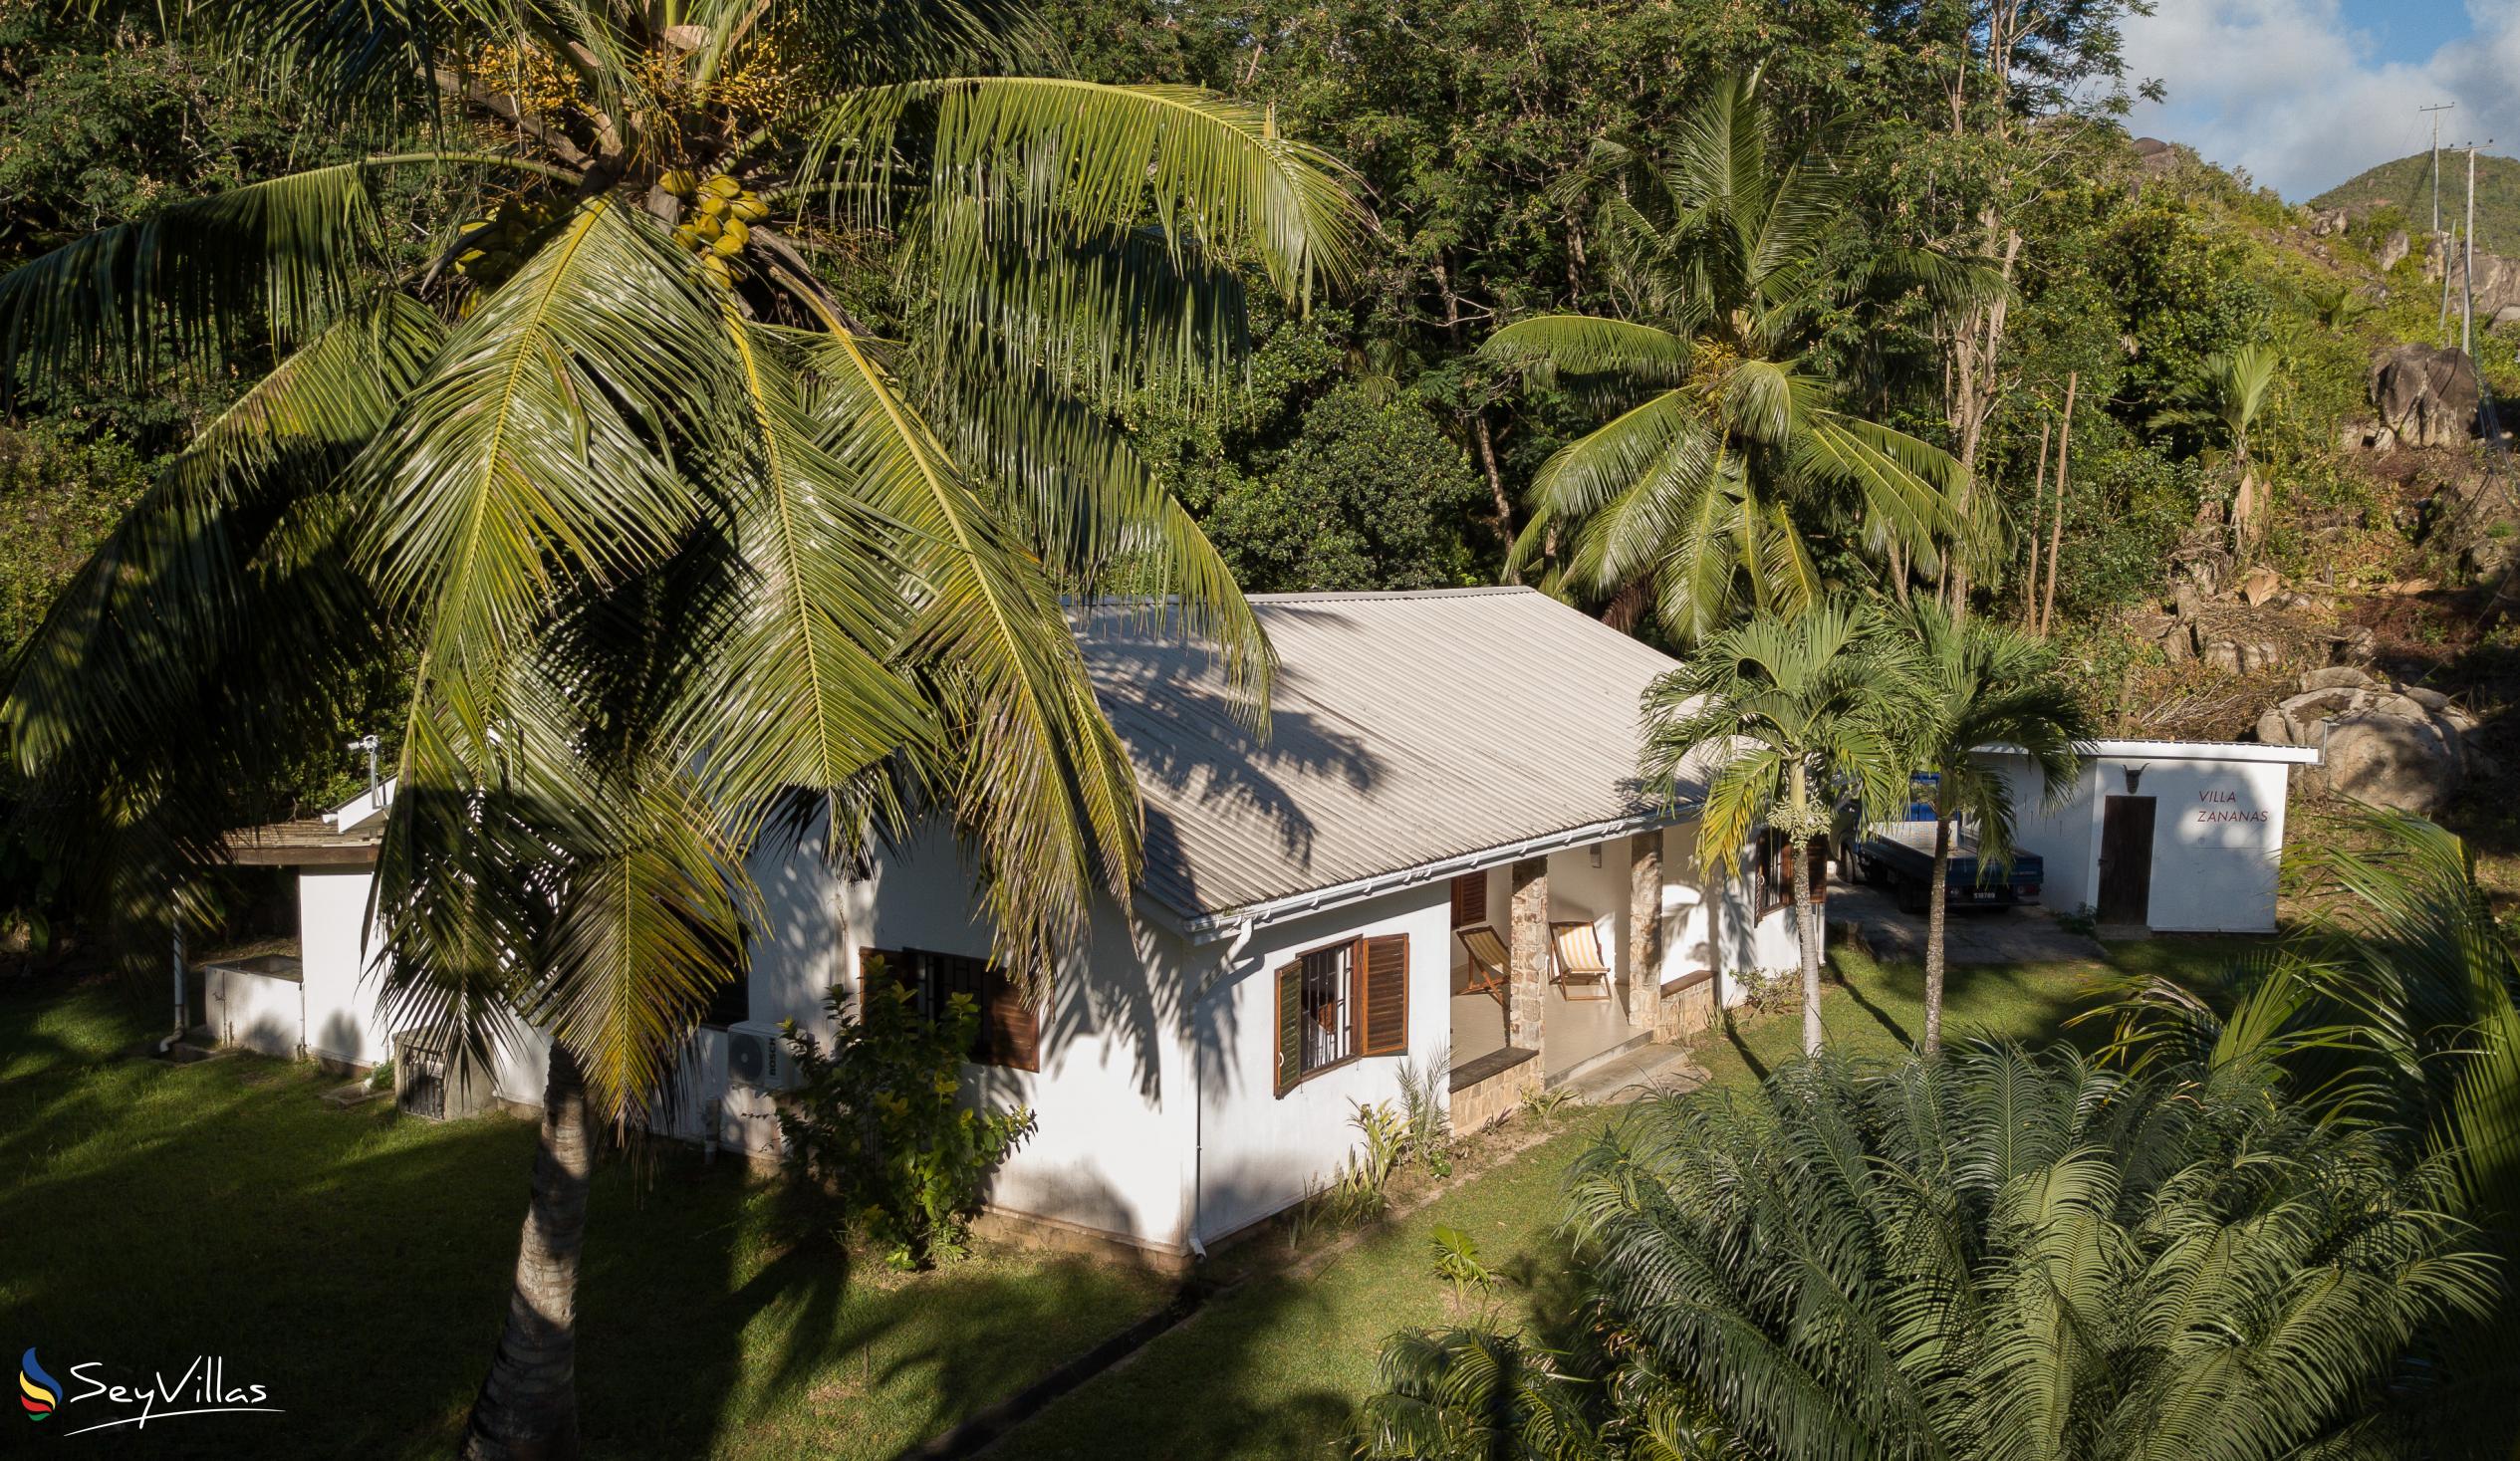 Foto 5: Villa Zananas - Aussenbereich - Praslin (Seychellen)